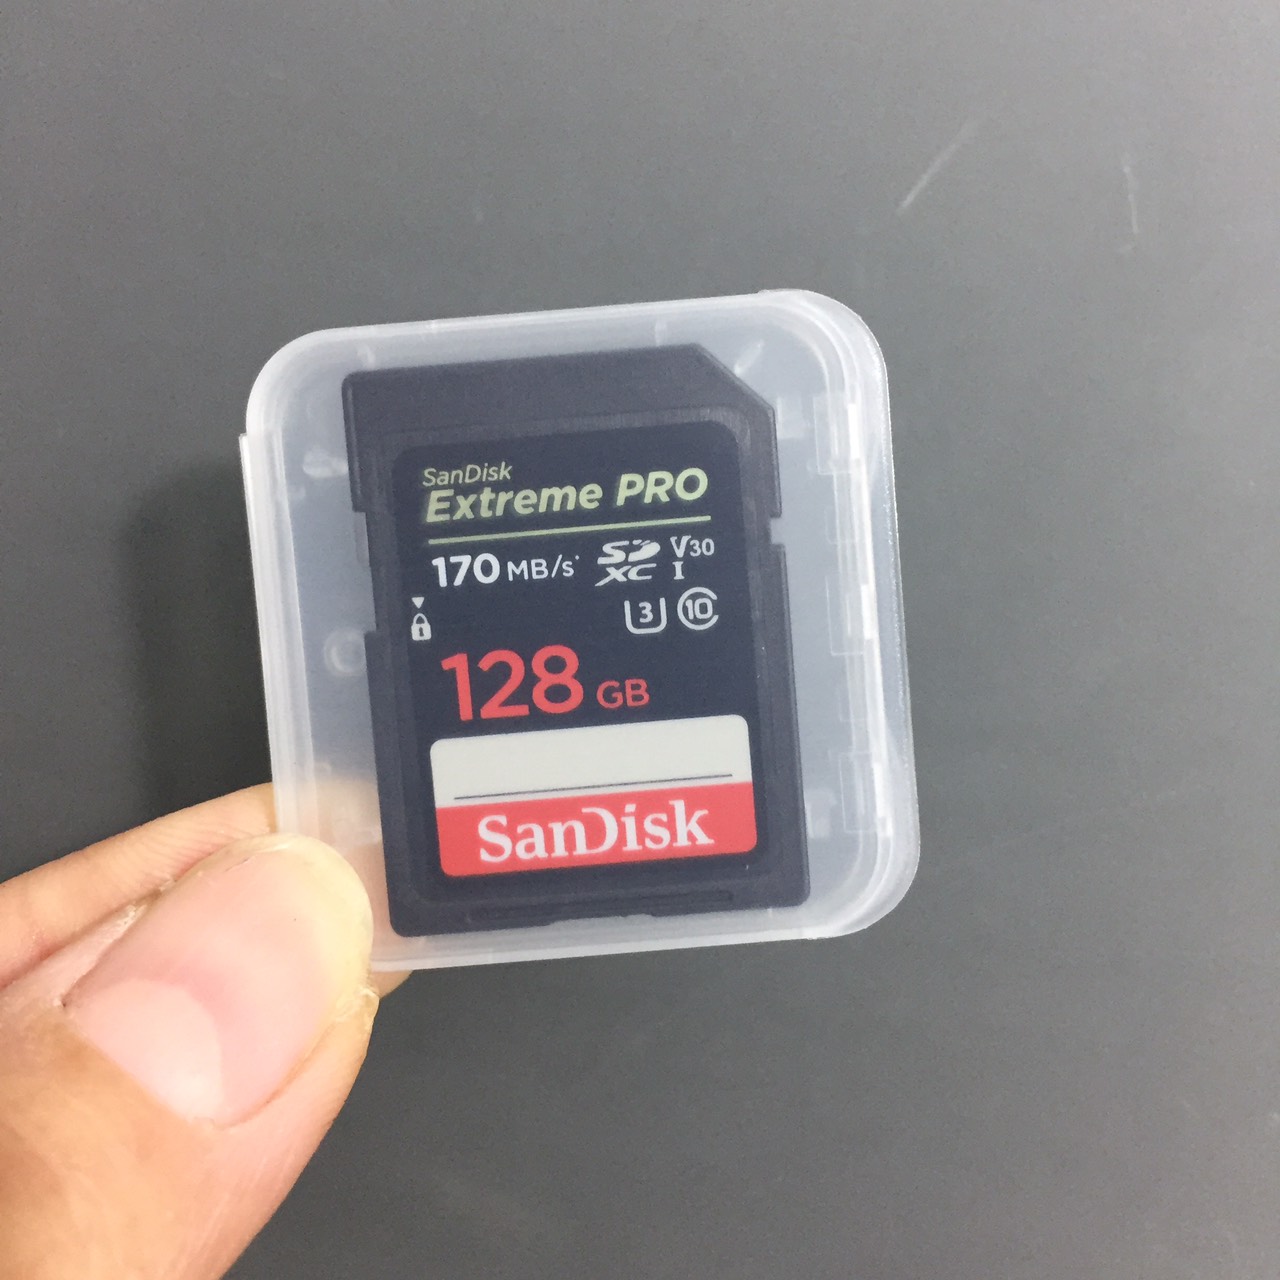 [ 32GB/ 64GB/ 128GB/ 256GB] Thẻ nhớ SD tốc độ 200MB/s Sandisk Extreme PRO (U3 - V30) SDSDXXY